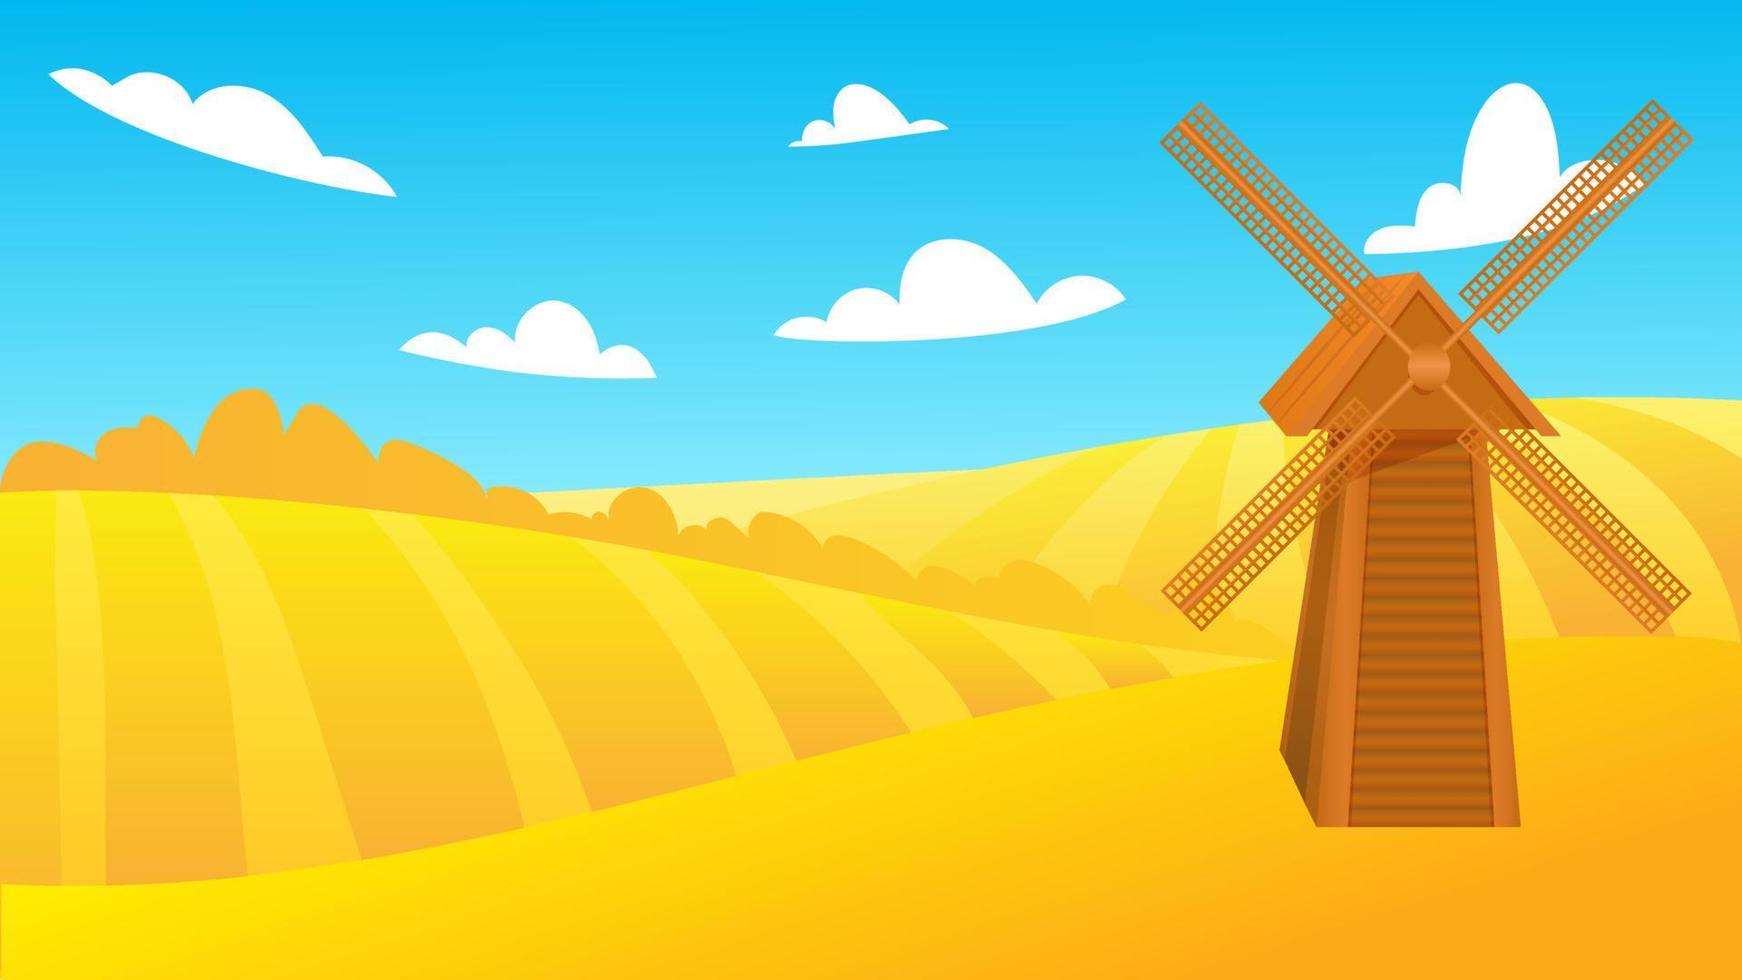 paysage d'été rural avec un moulin à vent dans un champ de blé mûr sur les collines et les vallées en arrière-plan. illustration vectorielle avec champs de céréales dorées et moulin. récolte d'automne à la ferme vecteur